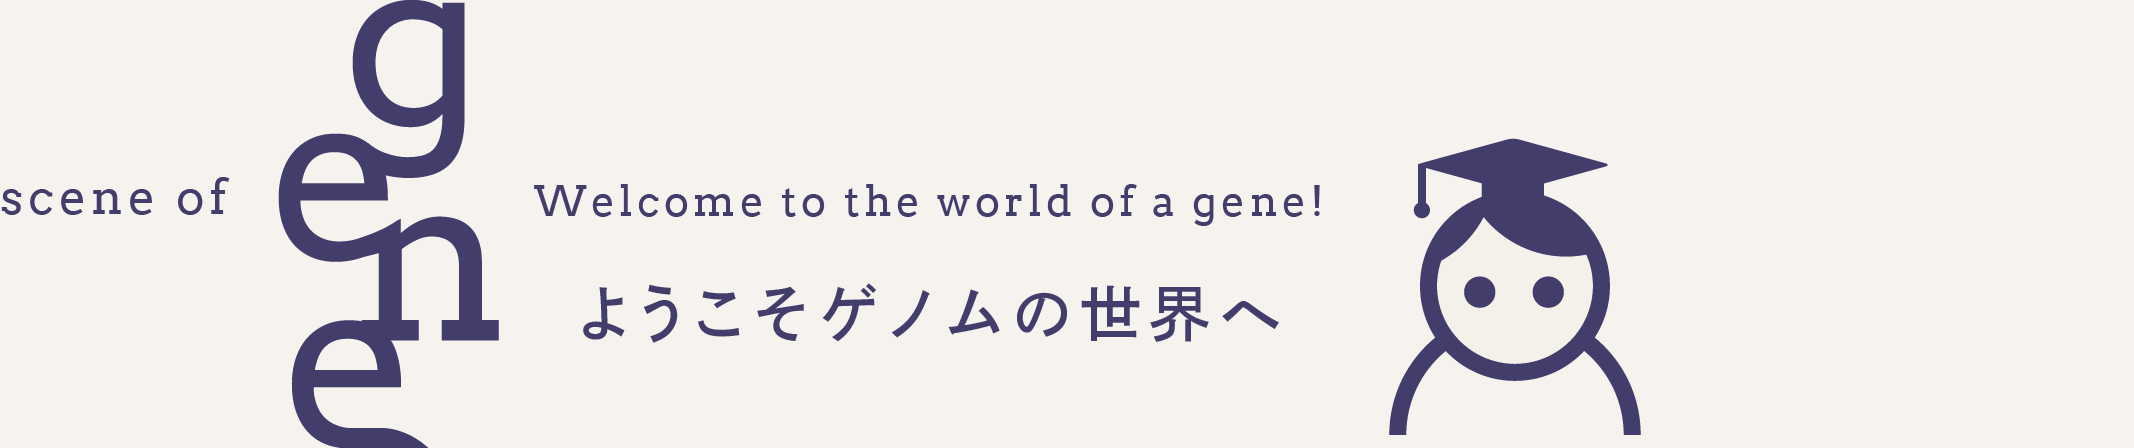 川嶋順子 | ようこそゲノムの世界へ